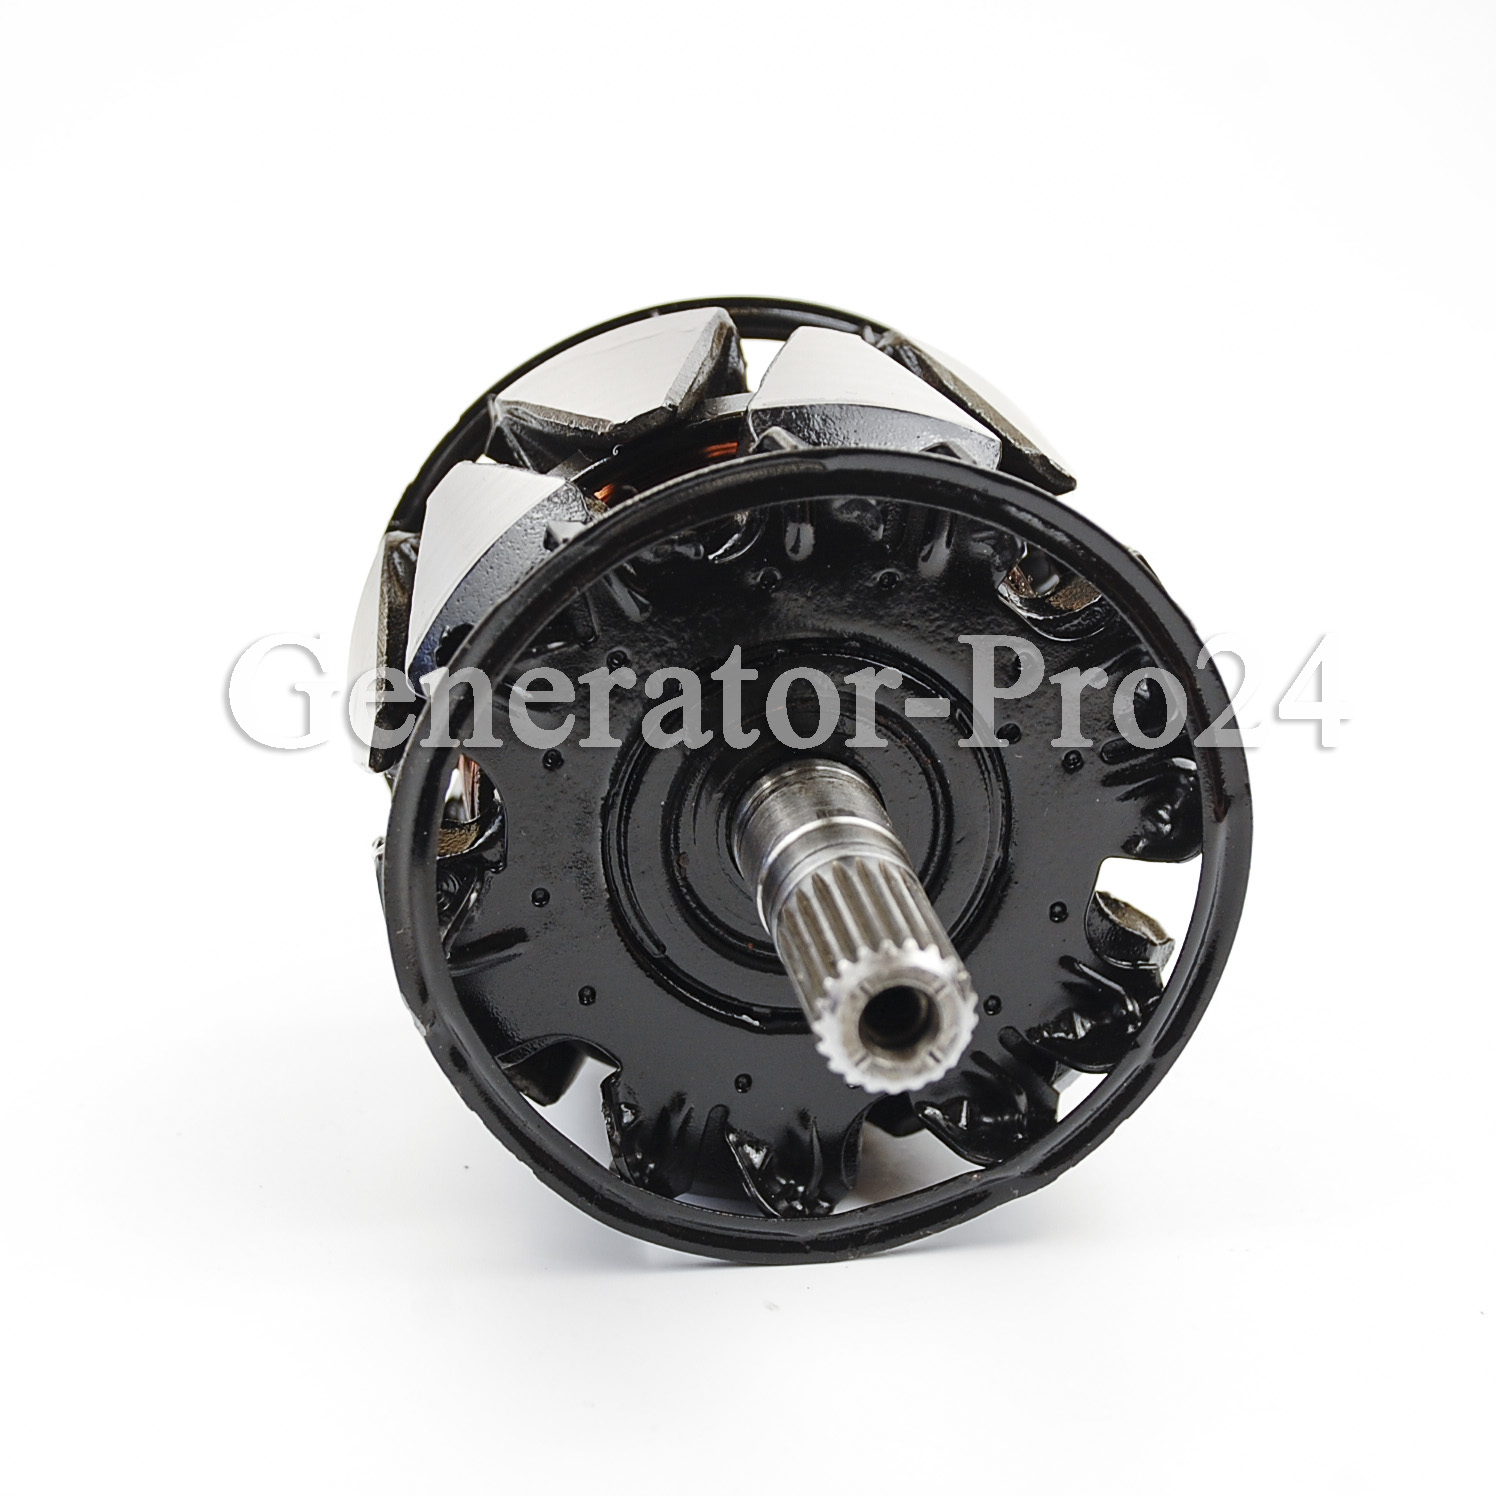 31101-MCA-003  | Generator-Pro24  